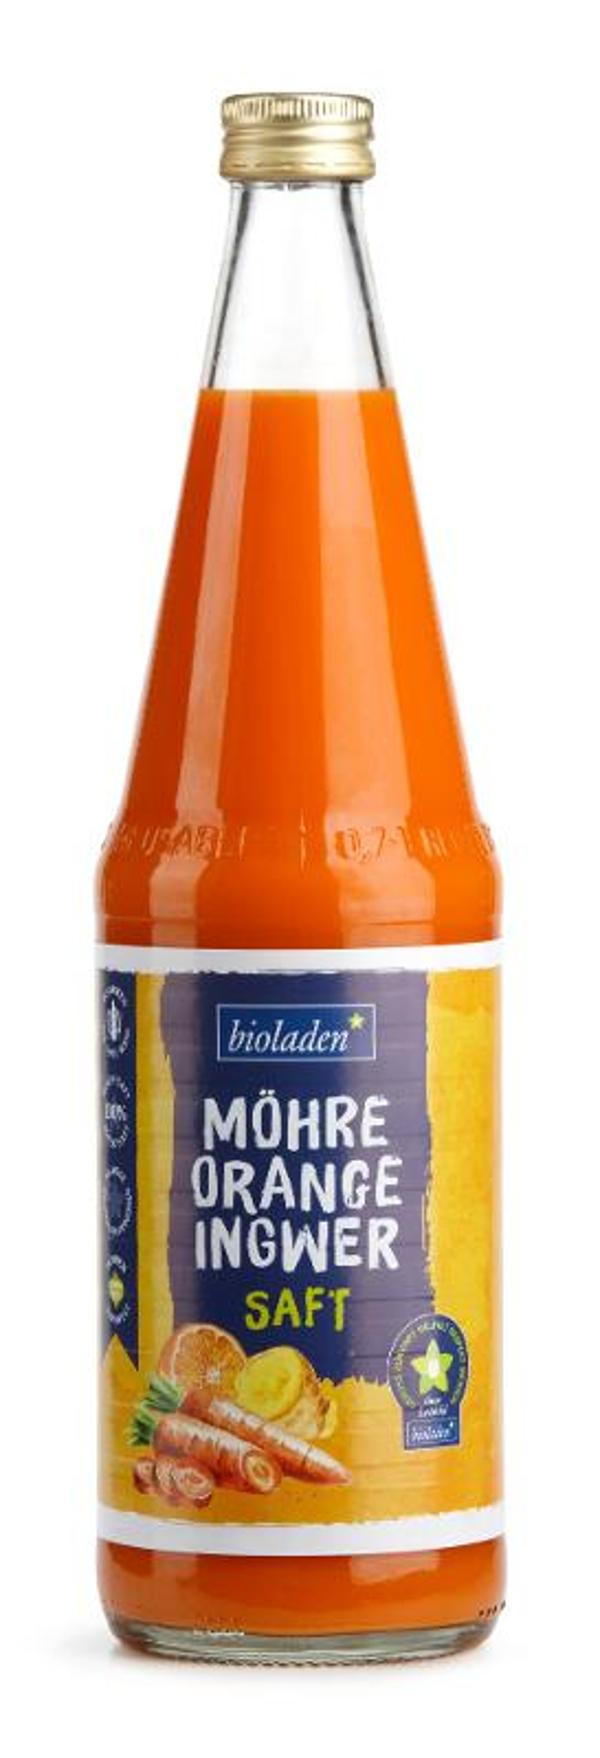 Produktfoto zu Möhre-Orange-Ingwer Saft, 0,7 l